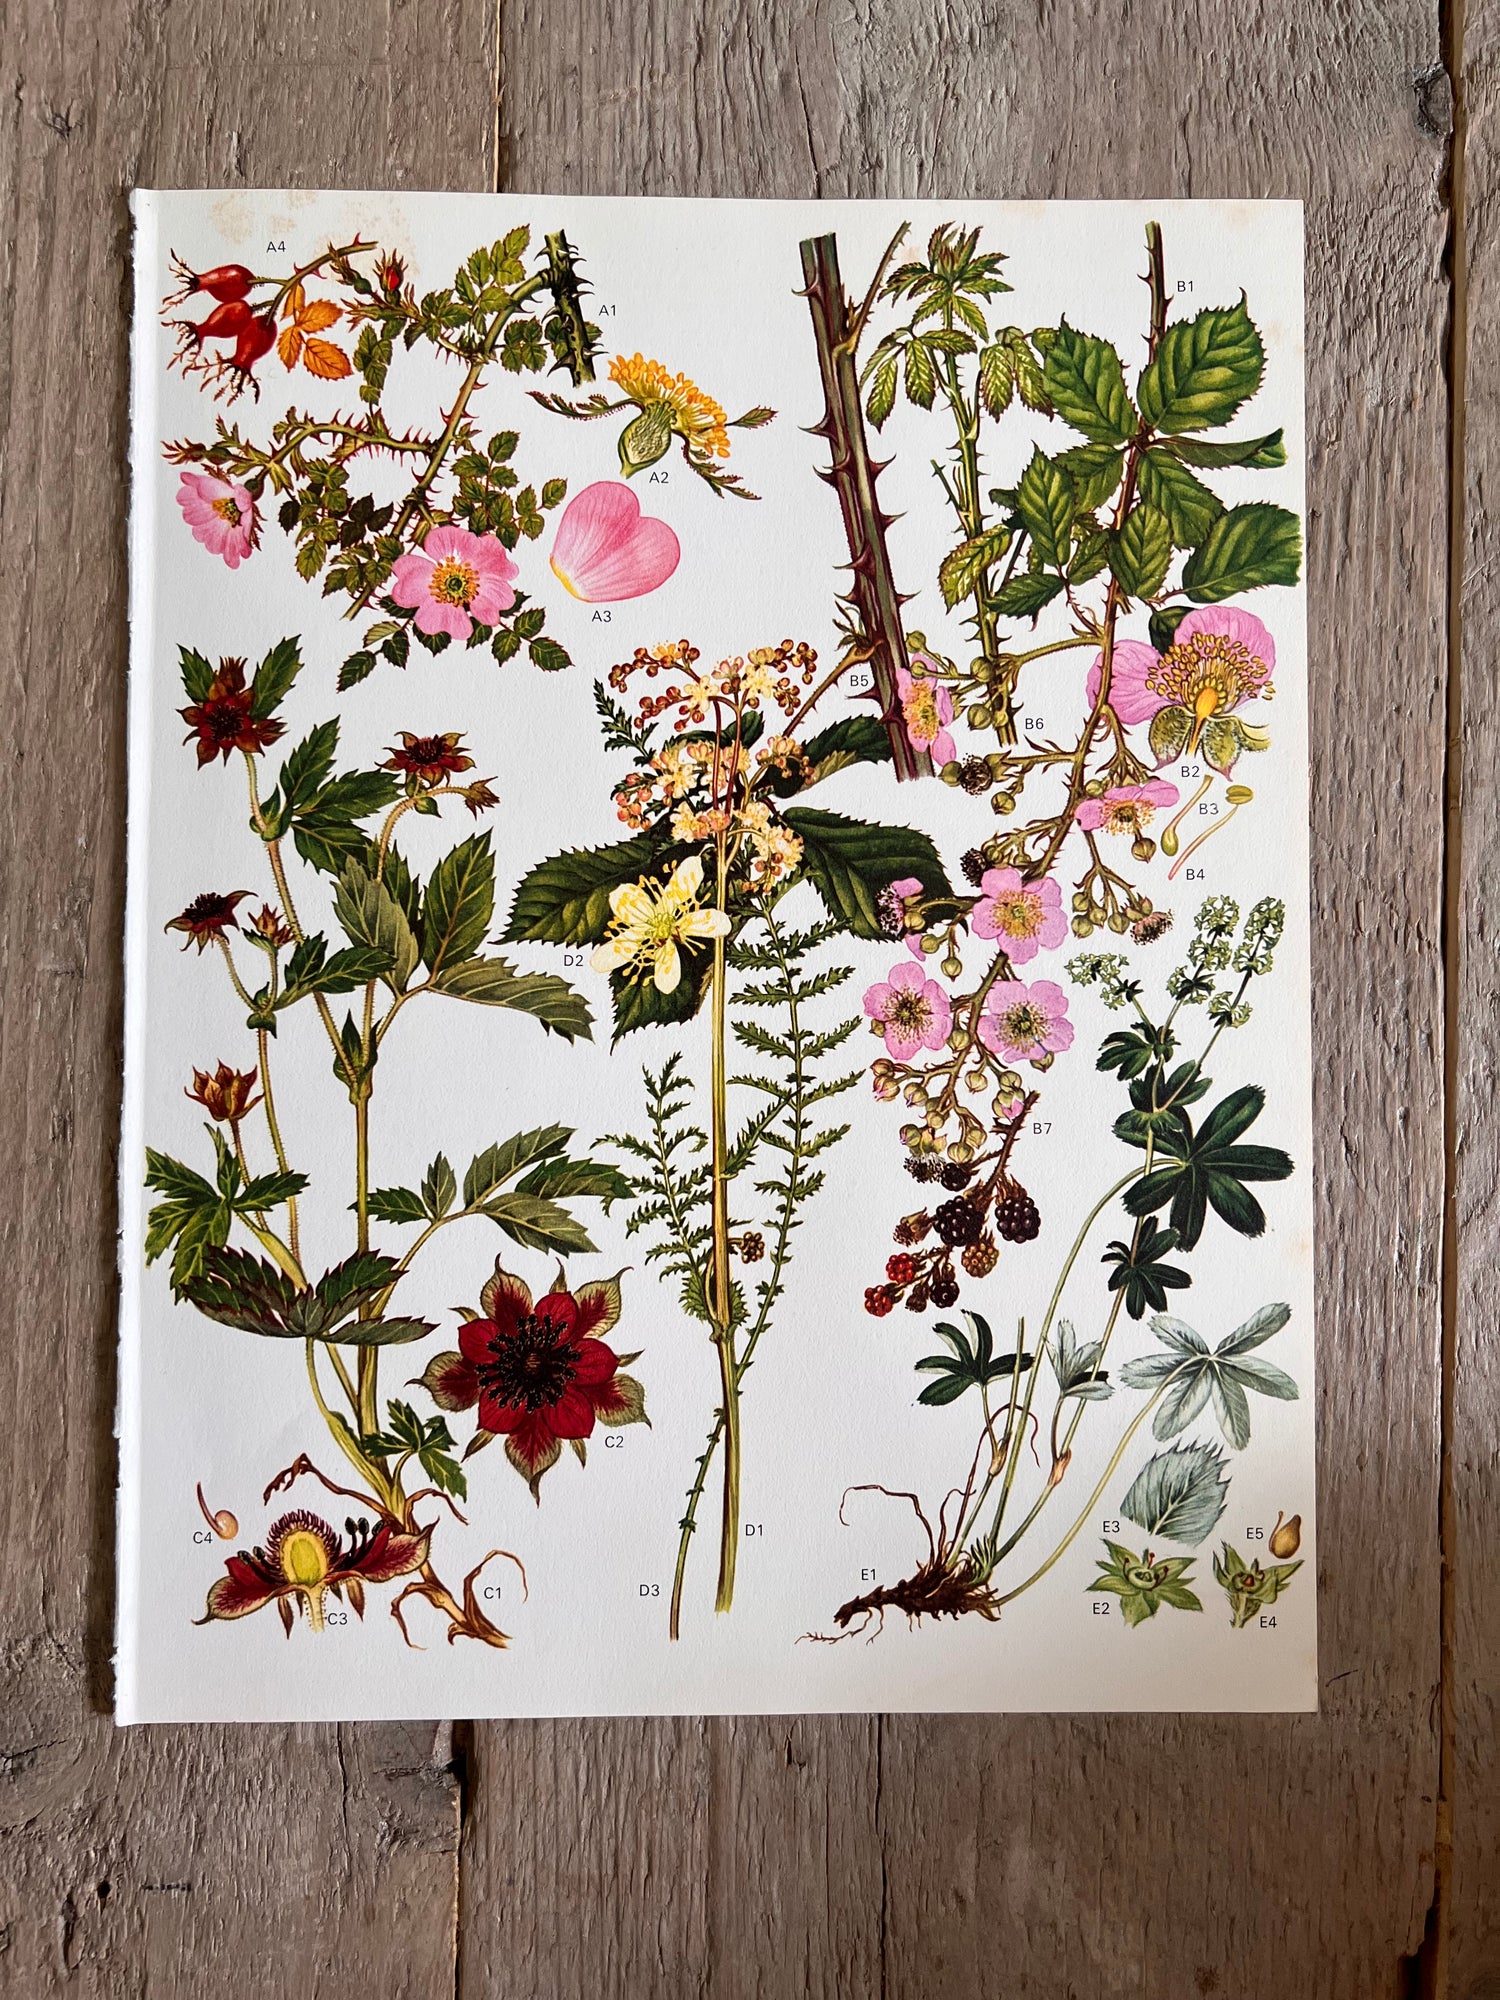 Botanische illustratie braam en rozenbotel jaren 70